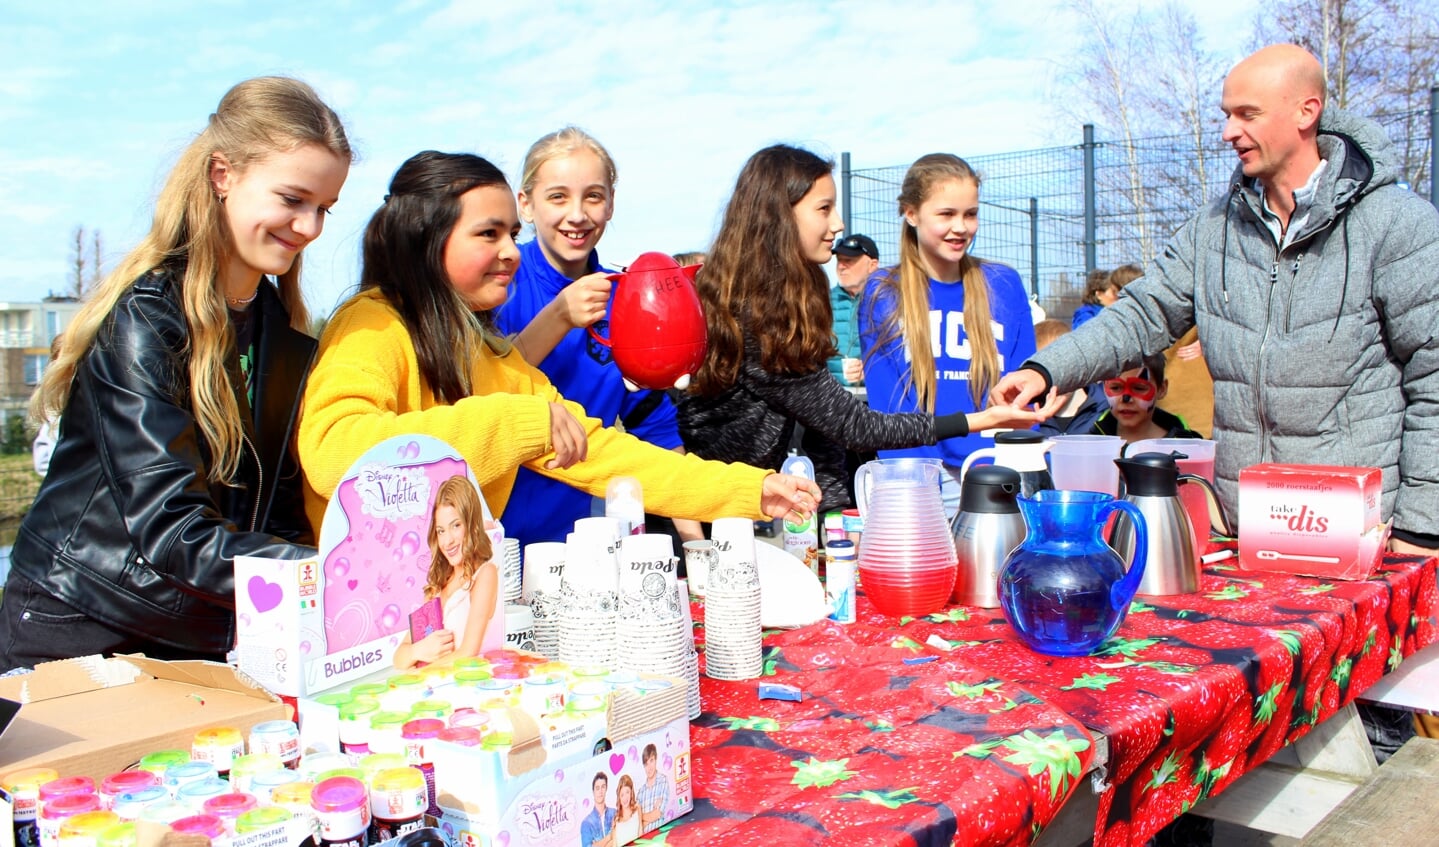 De leerlingen van basisschool De Zevensprong hielden een drukbezochte vrijmarkt voor Oekraïne. Zo was de cupcakes-kraam van Céline, Anouk, Fleur, Dana en Jade zeer populair.